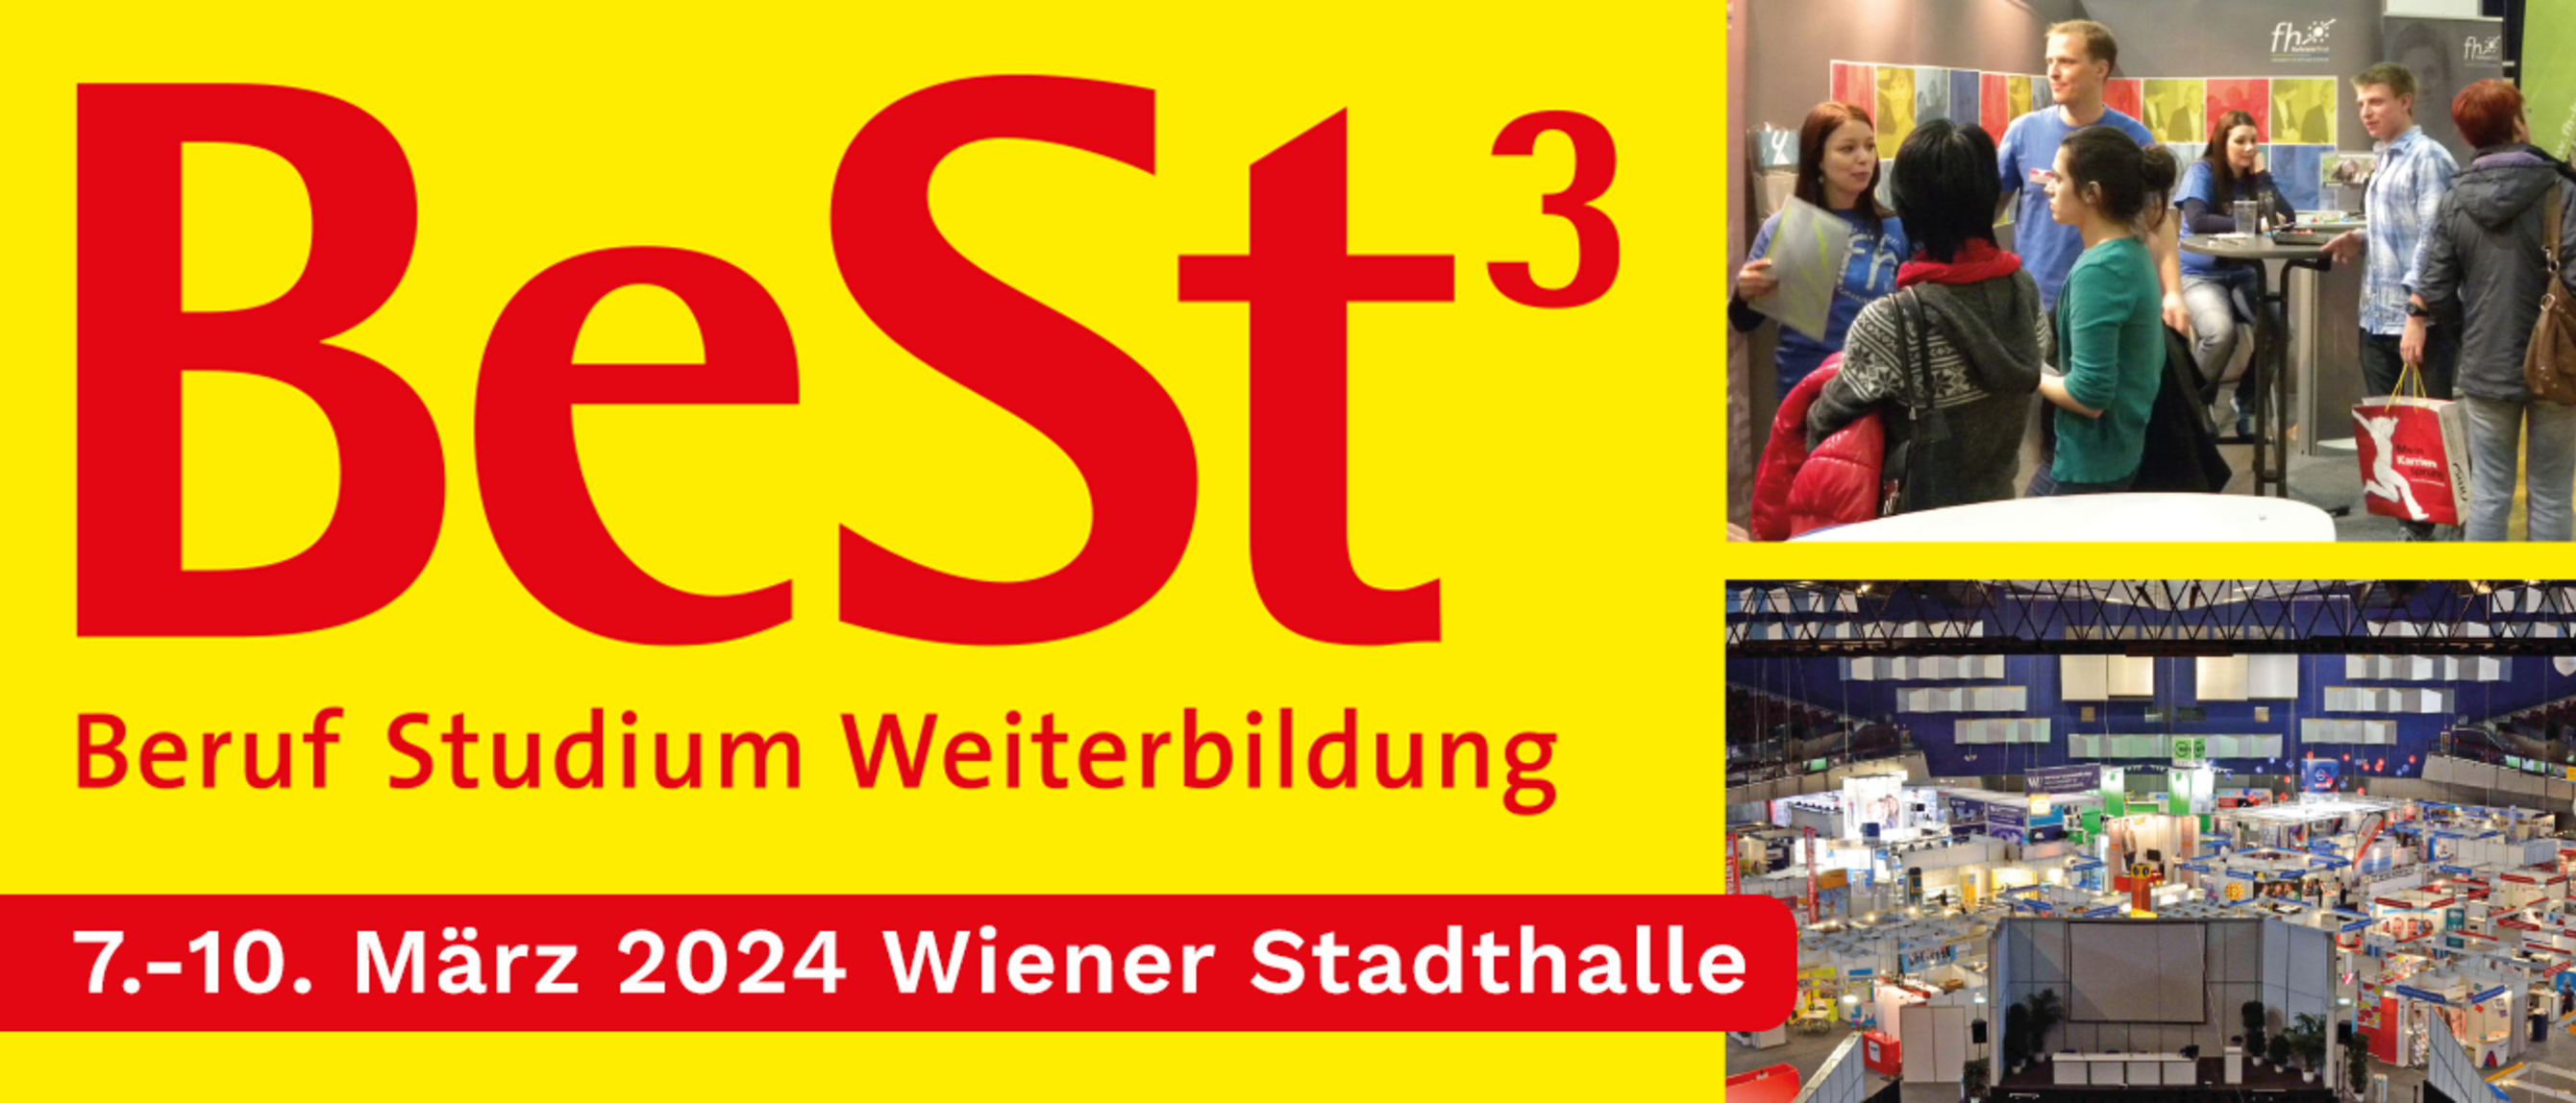 Infoplakat zur BeSt3 in der Wiener Stadthalle von 7. bis 10. März